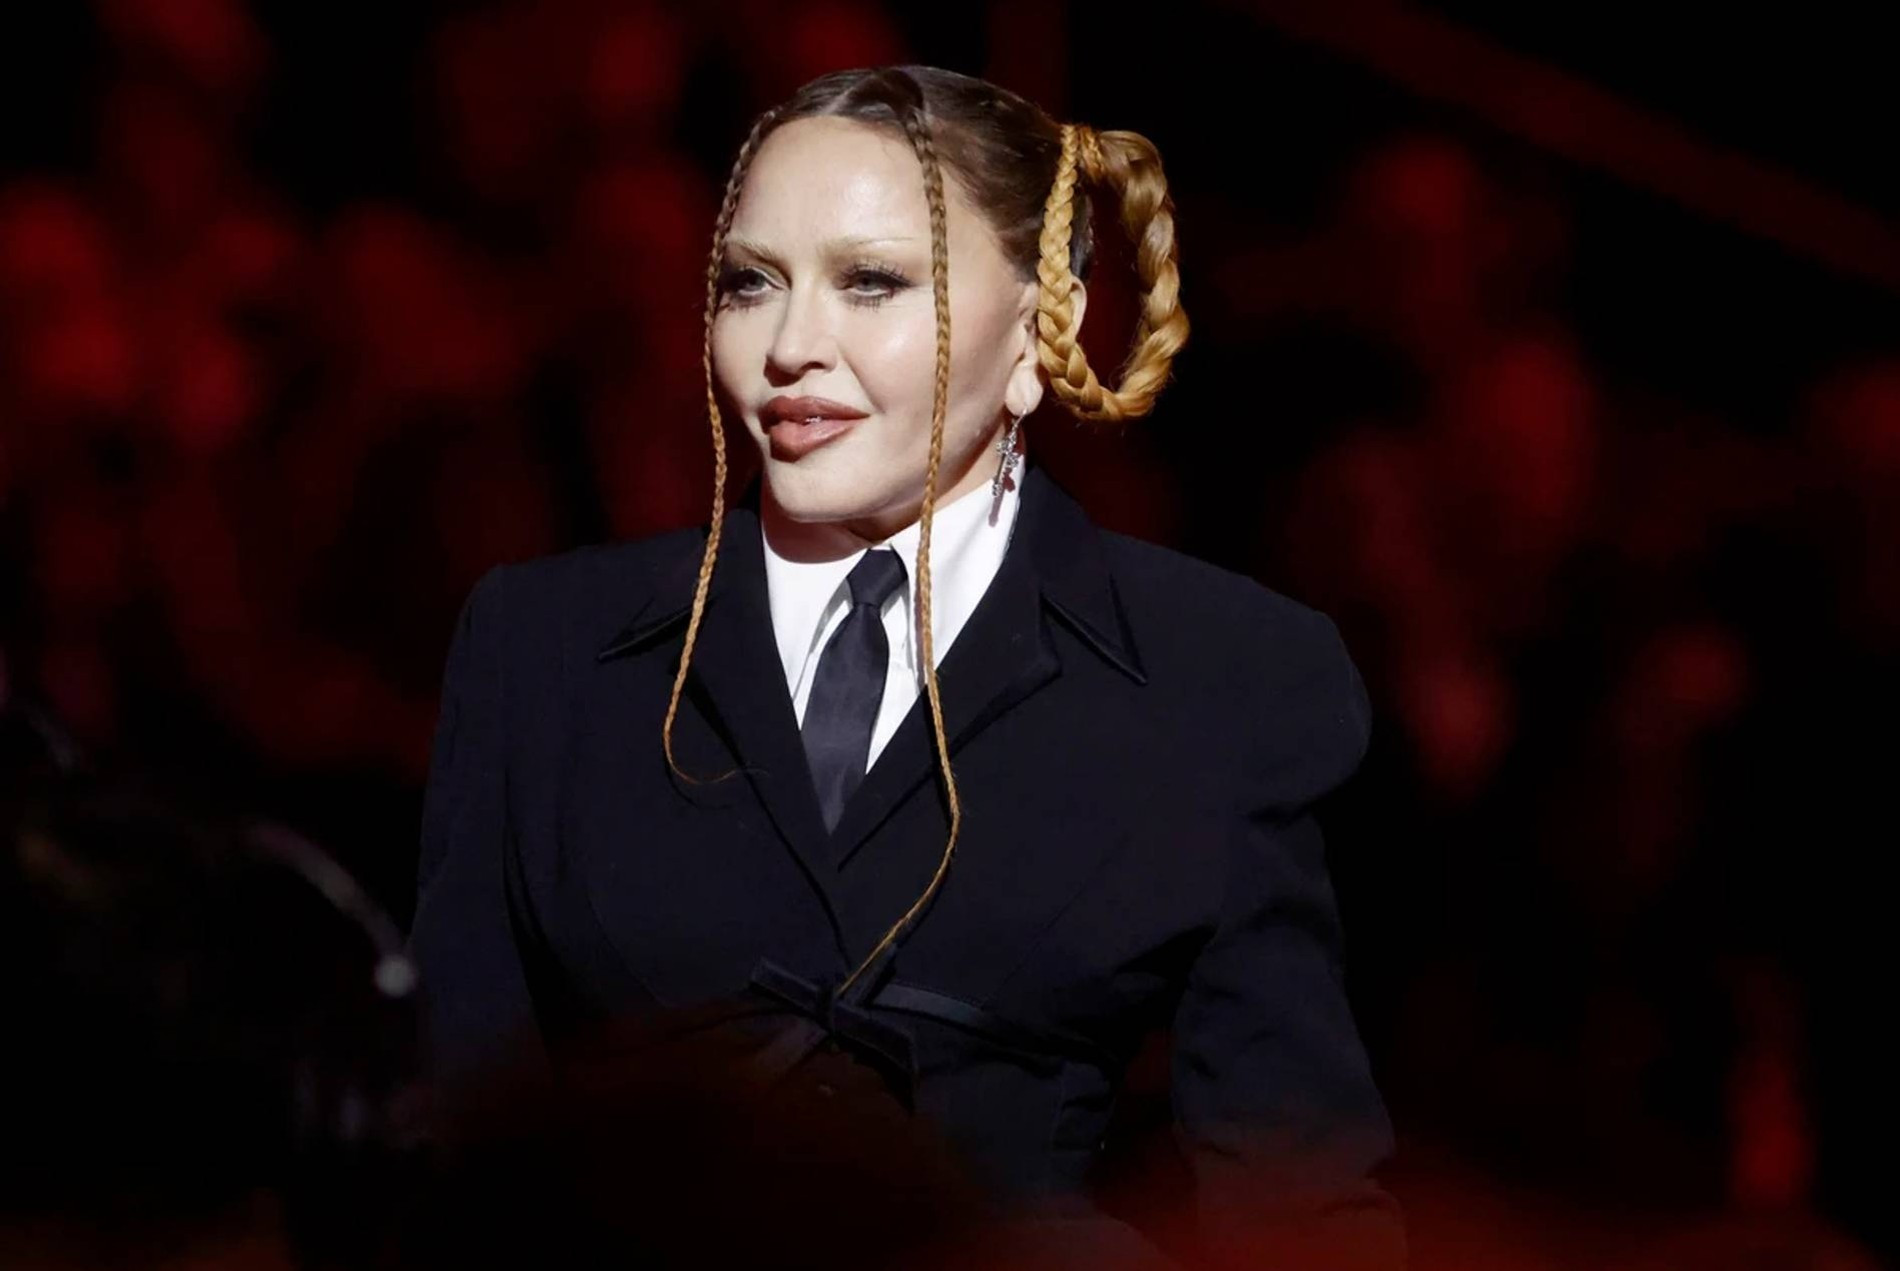 Мадонна на «Грэмми»
Фото: Getty